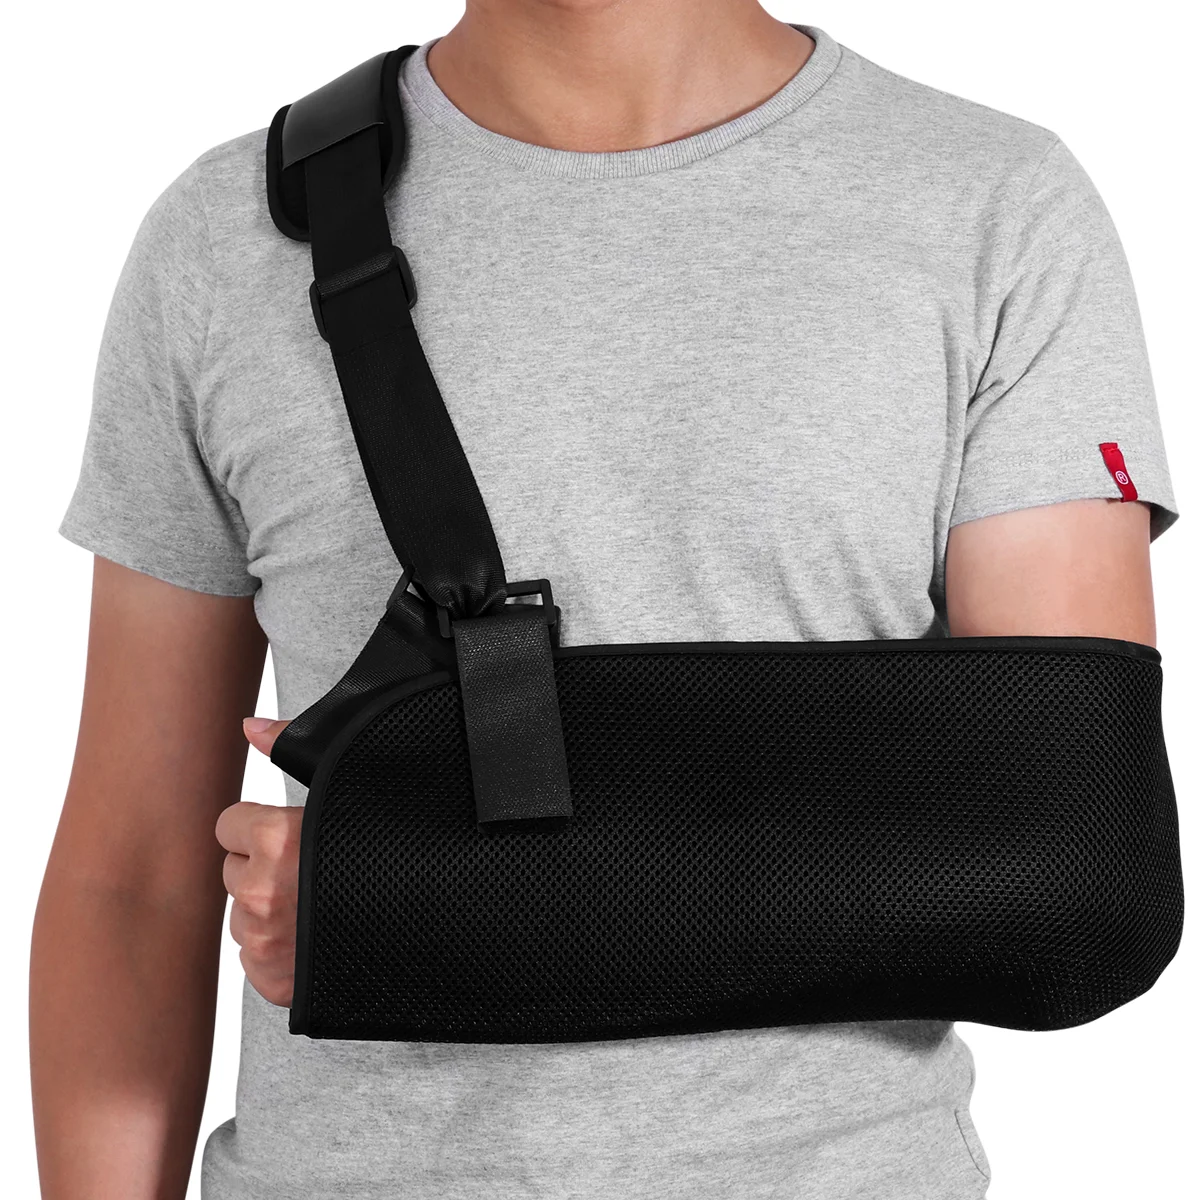 

Shoulder Sling Armimmobilizer Slingssupport Strap Injury Lightweight Brace Adjustable Breathable